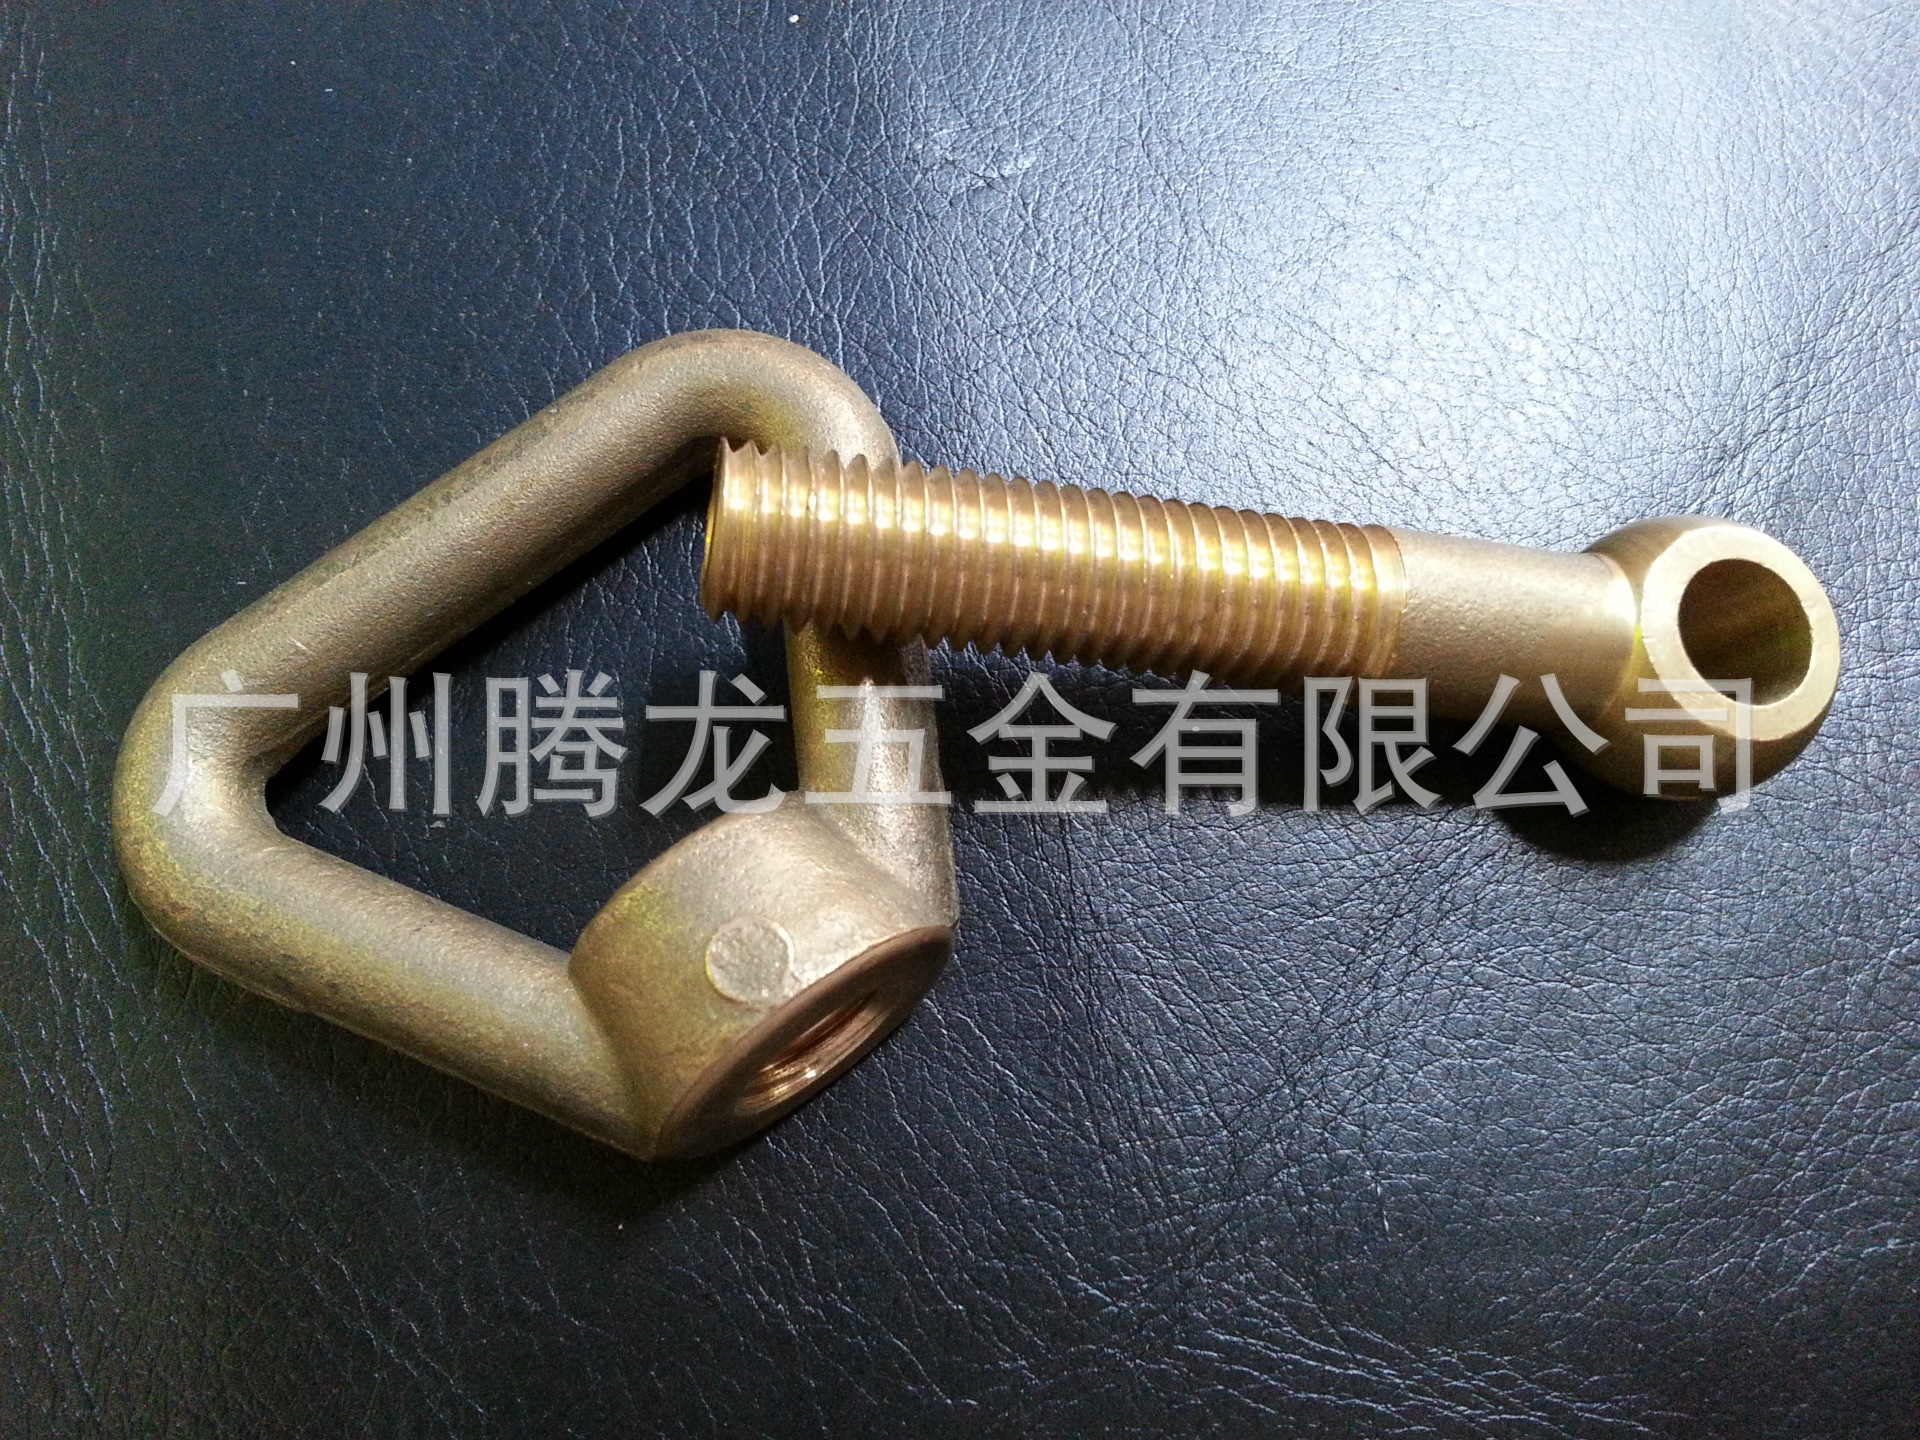 銅活節螺栓+銅環形螺母